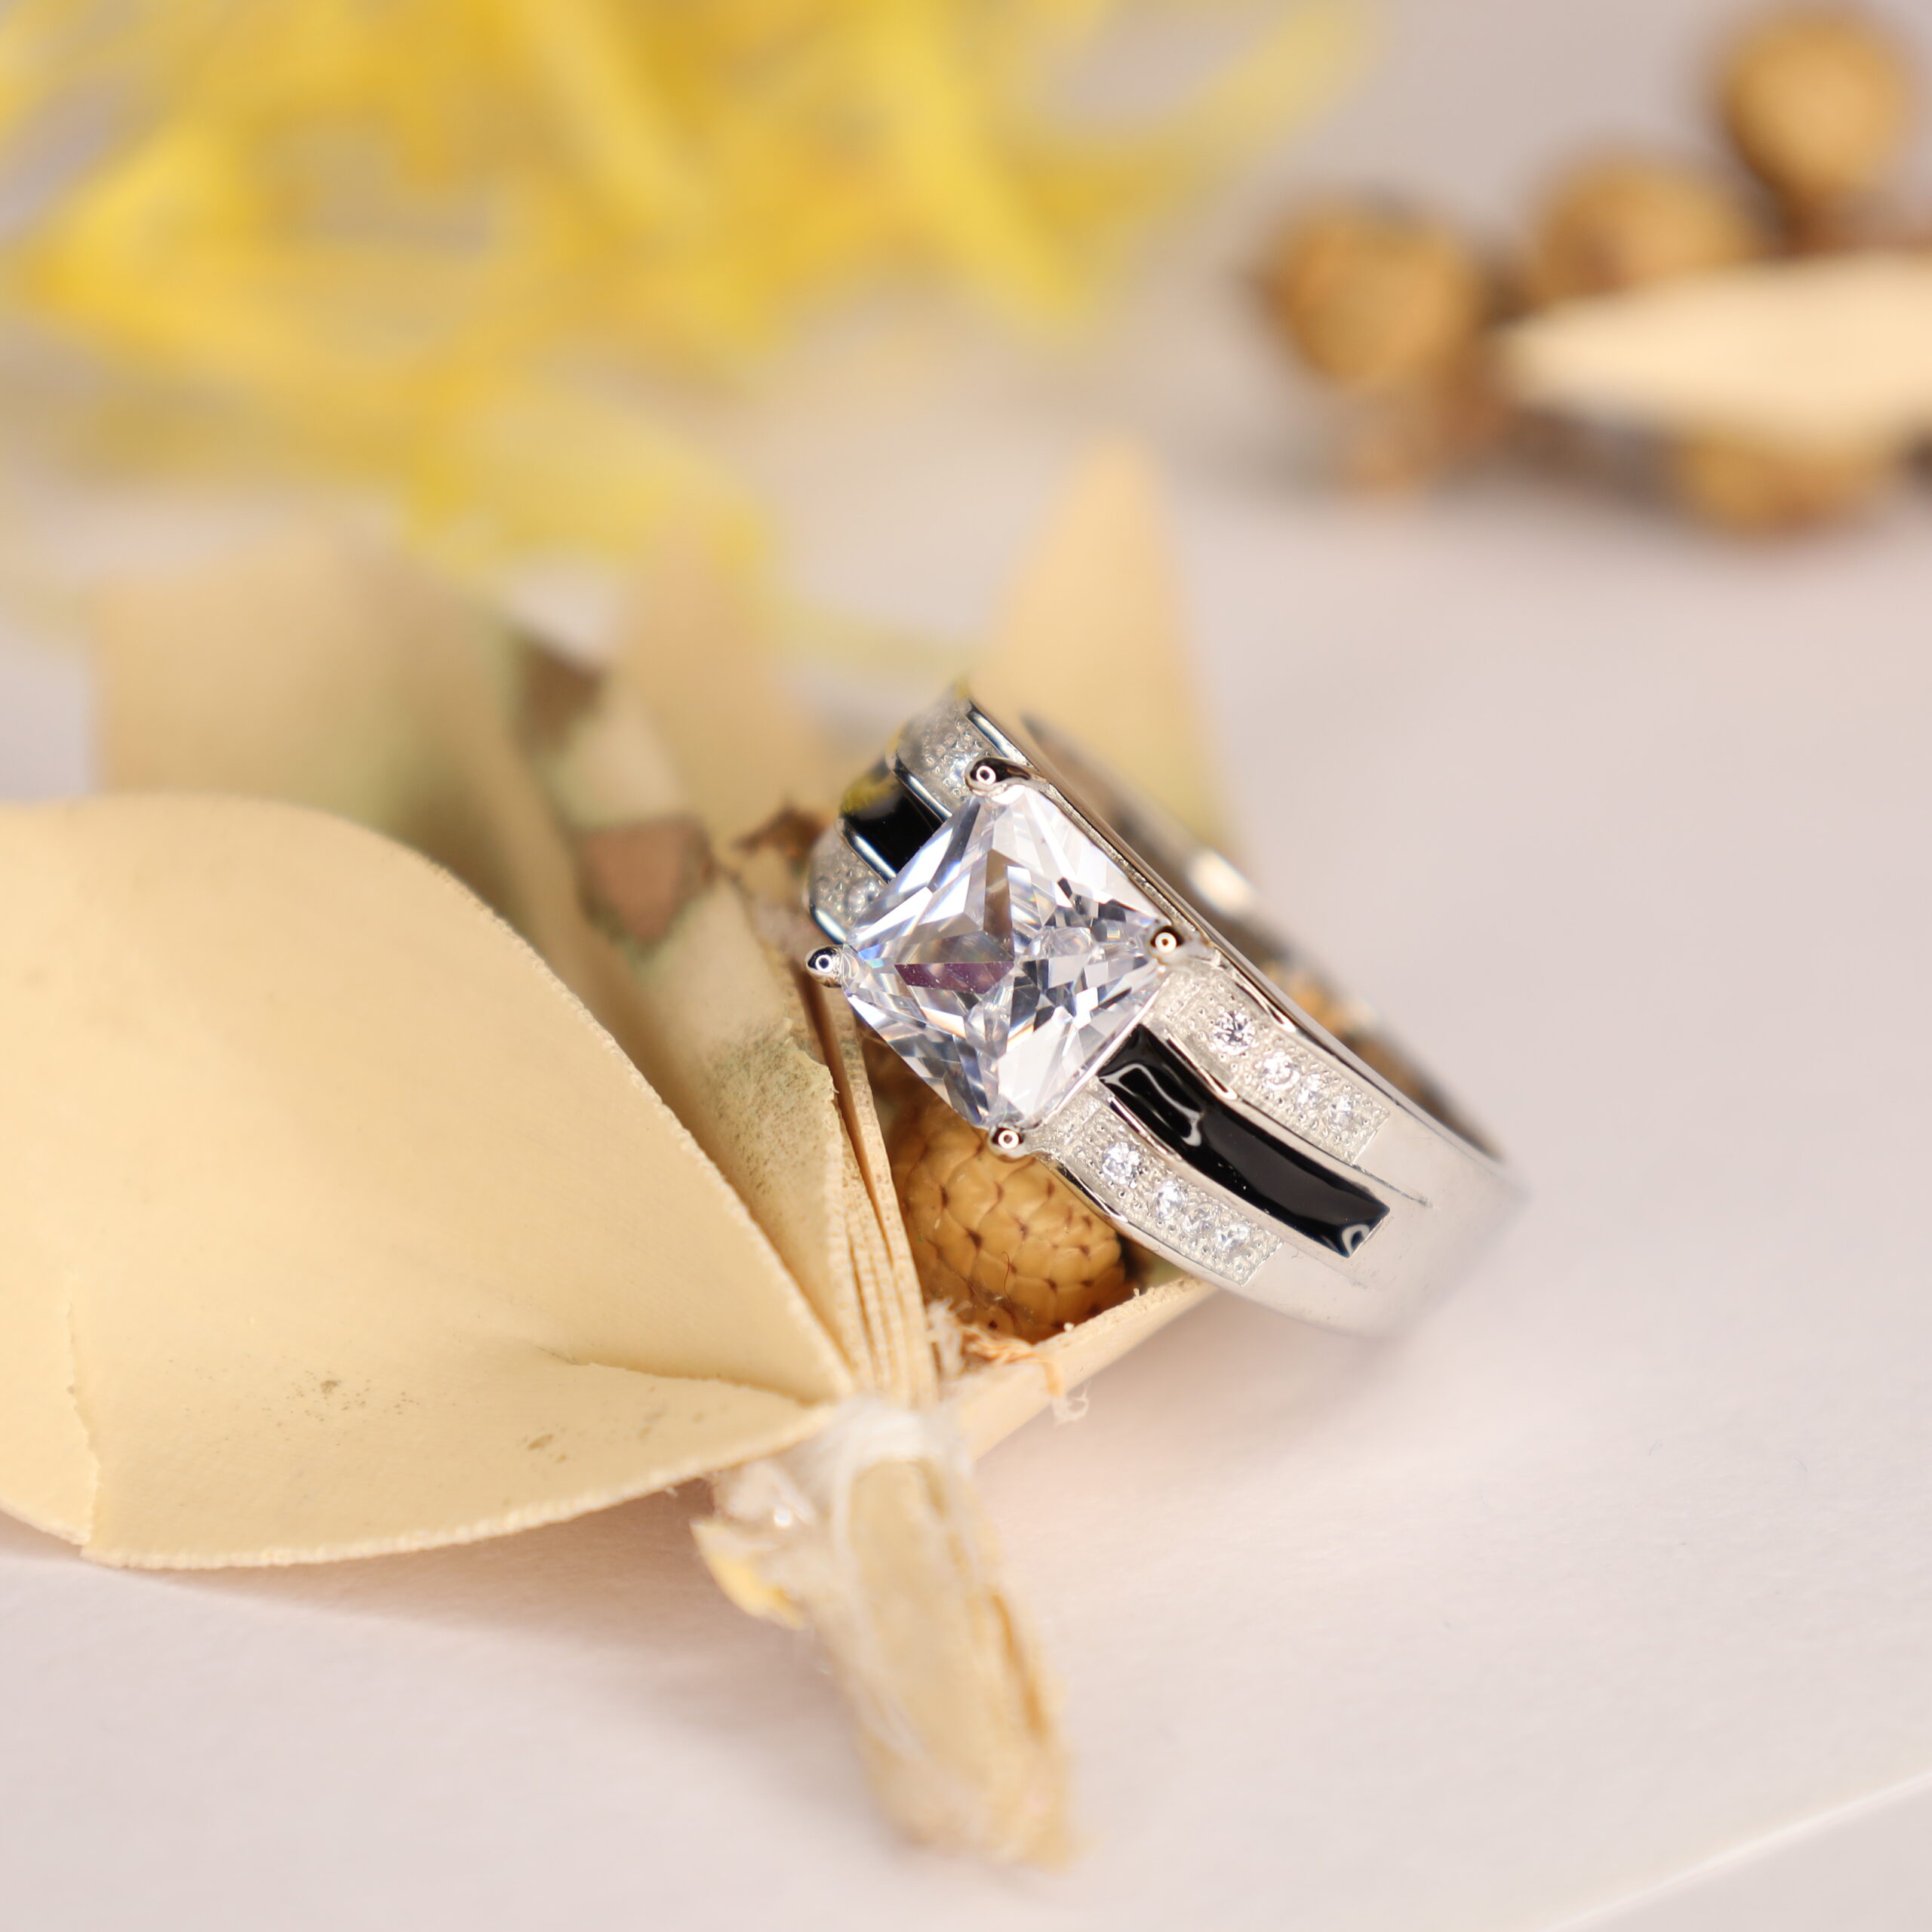 Mahakal Design Silver Ring For men's - Gem O Sparkle